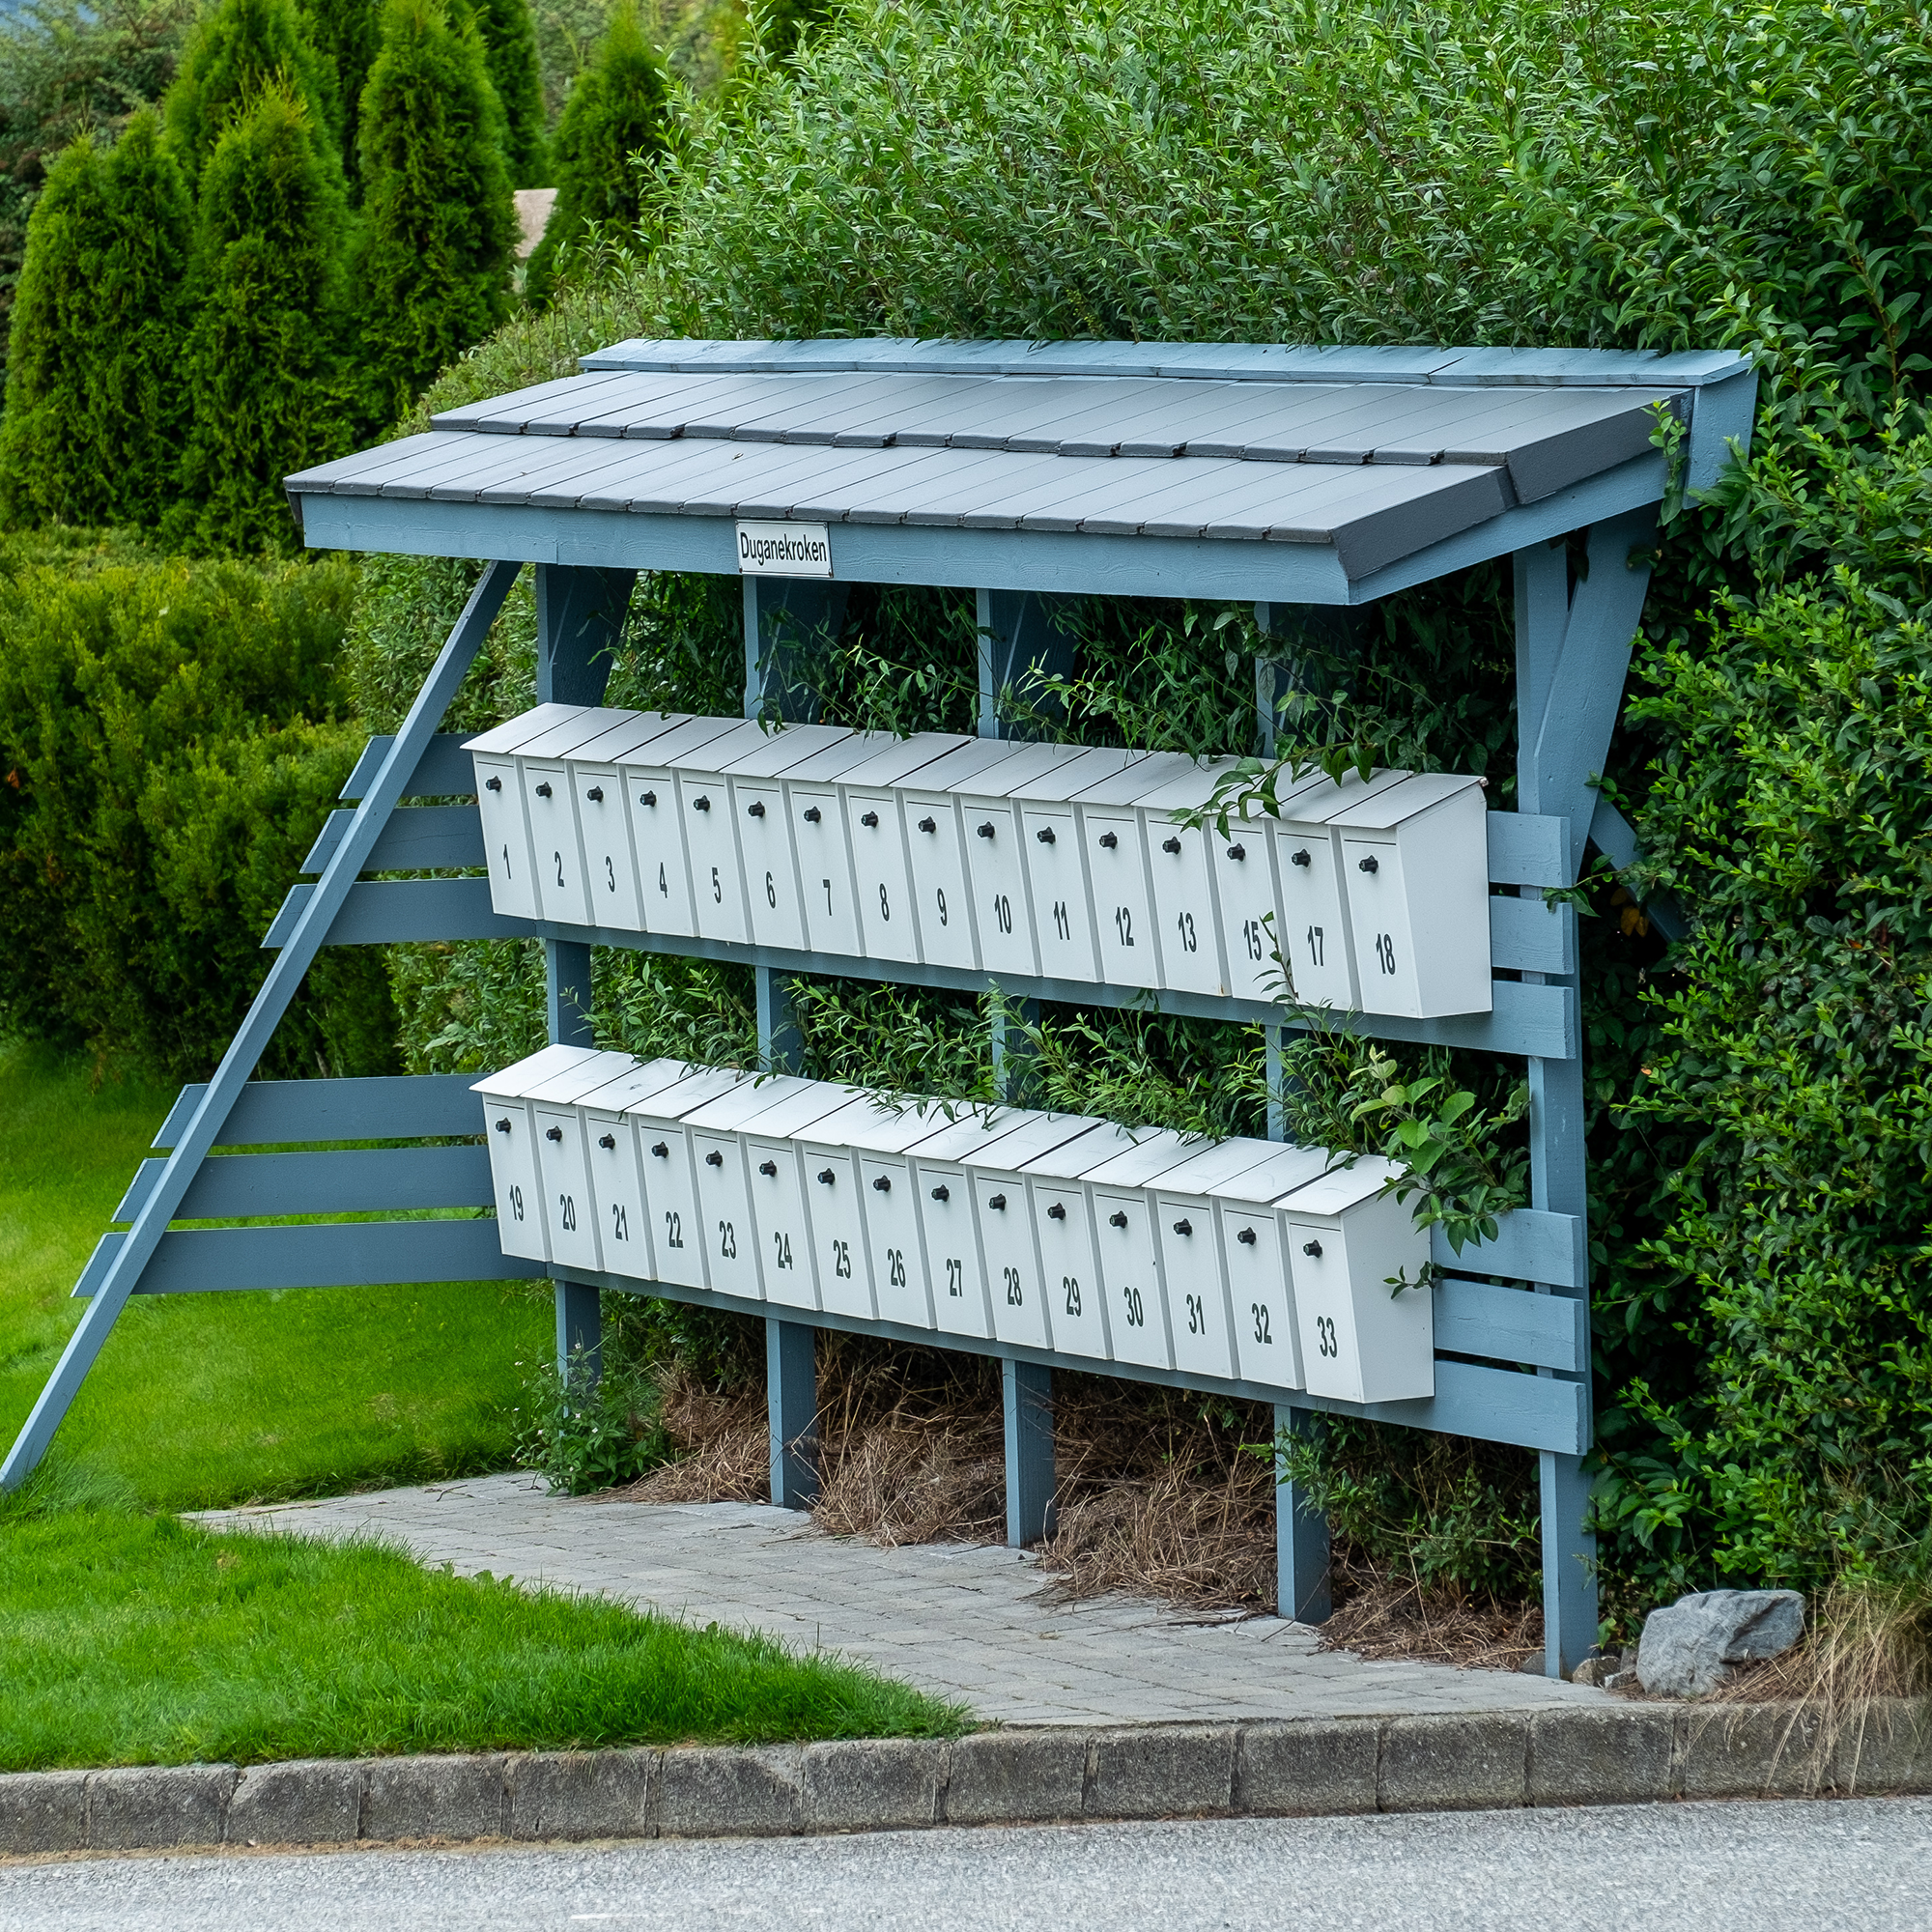 Bilde av et postkassestativ foran en grønn hekk